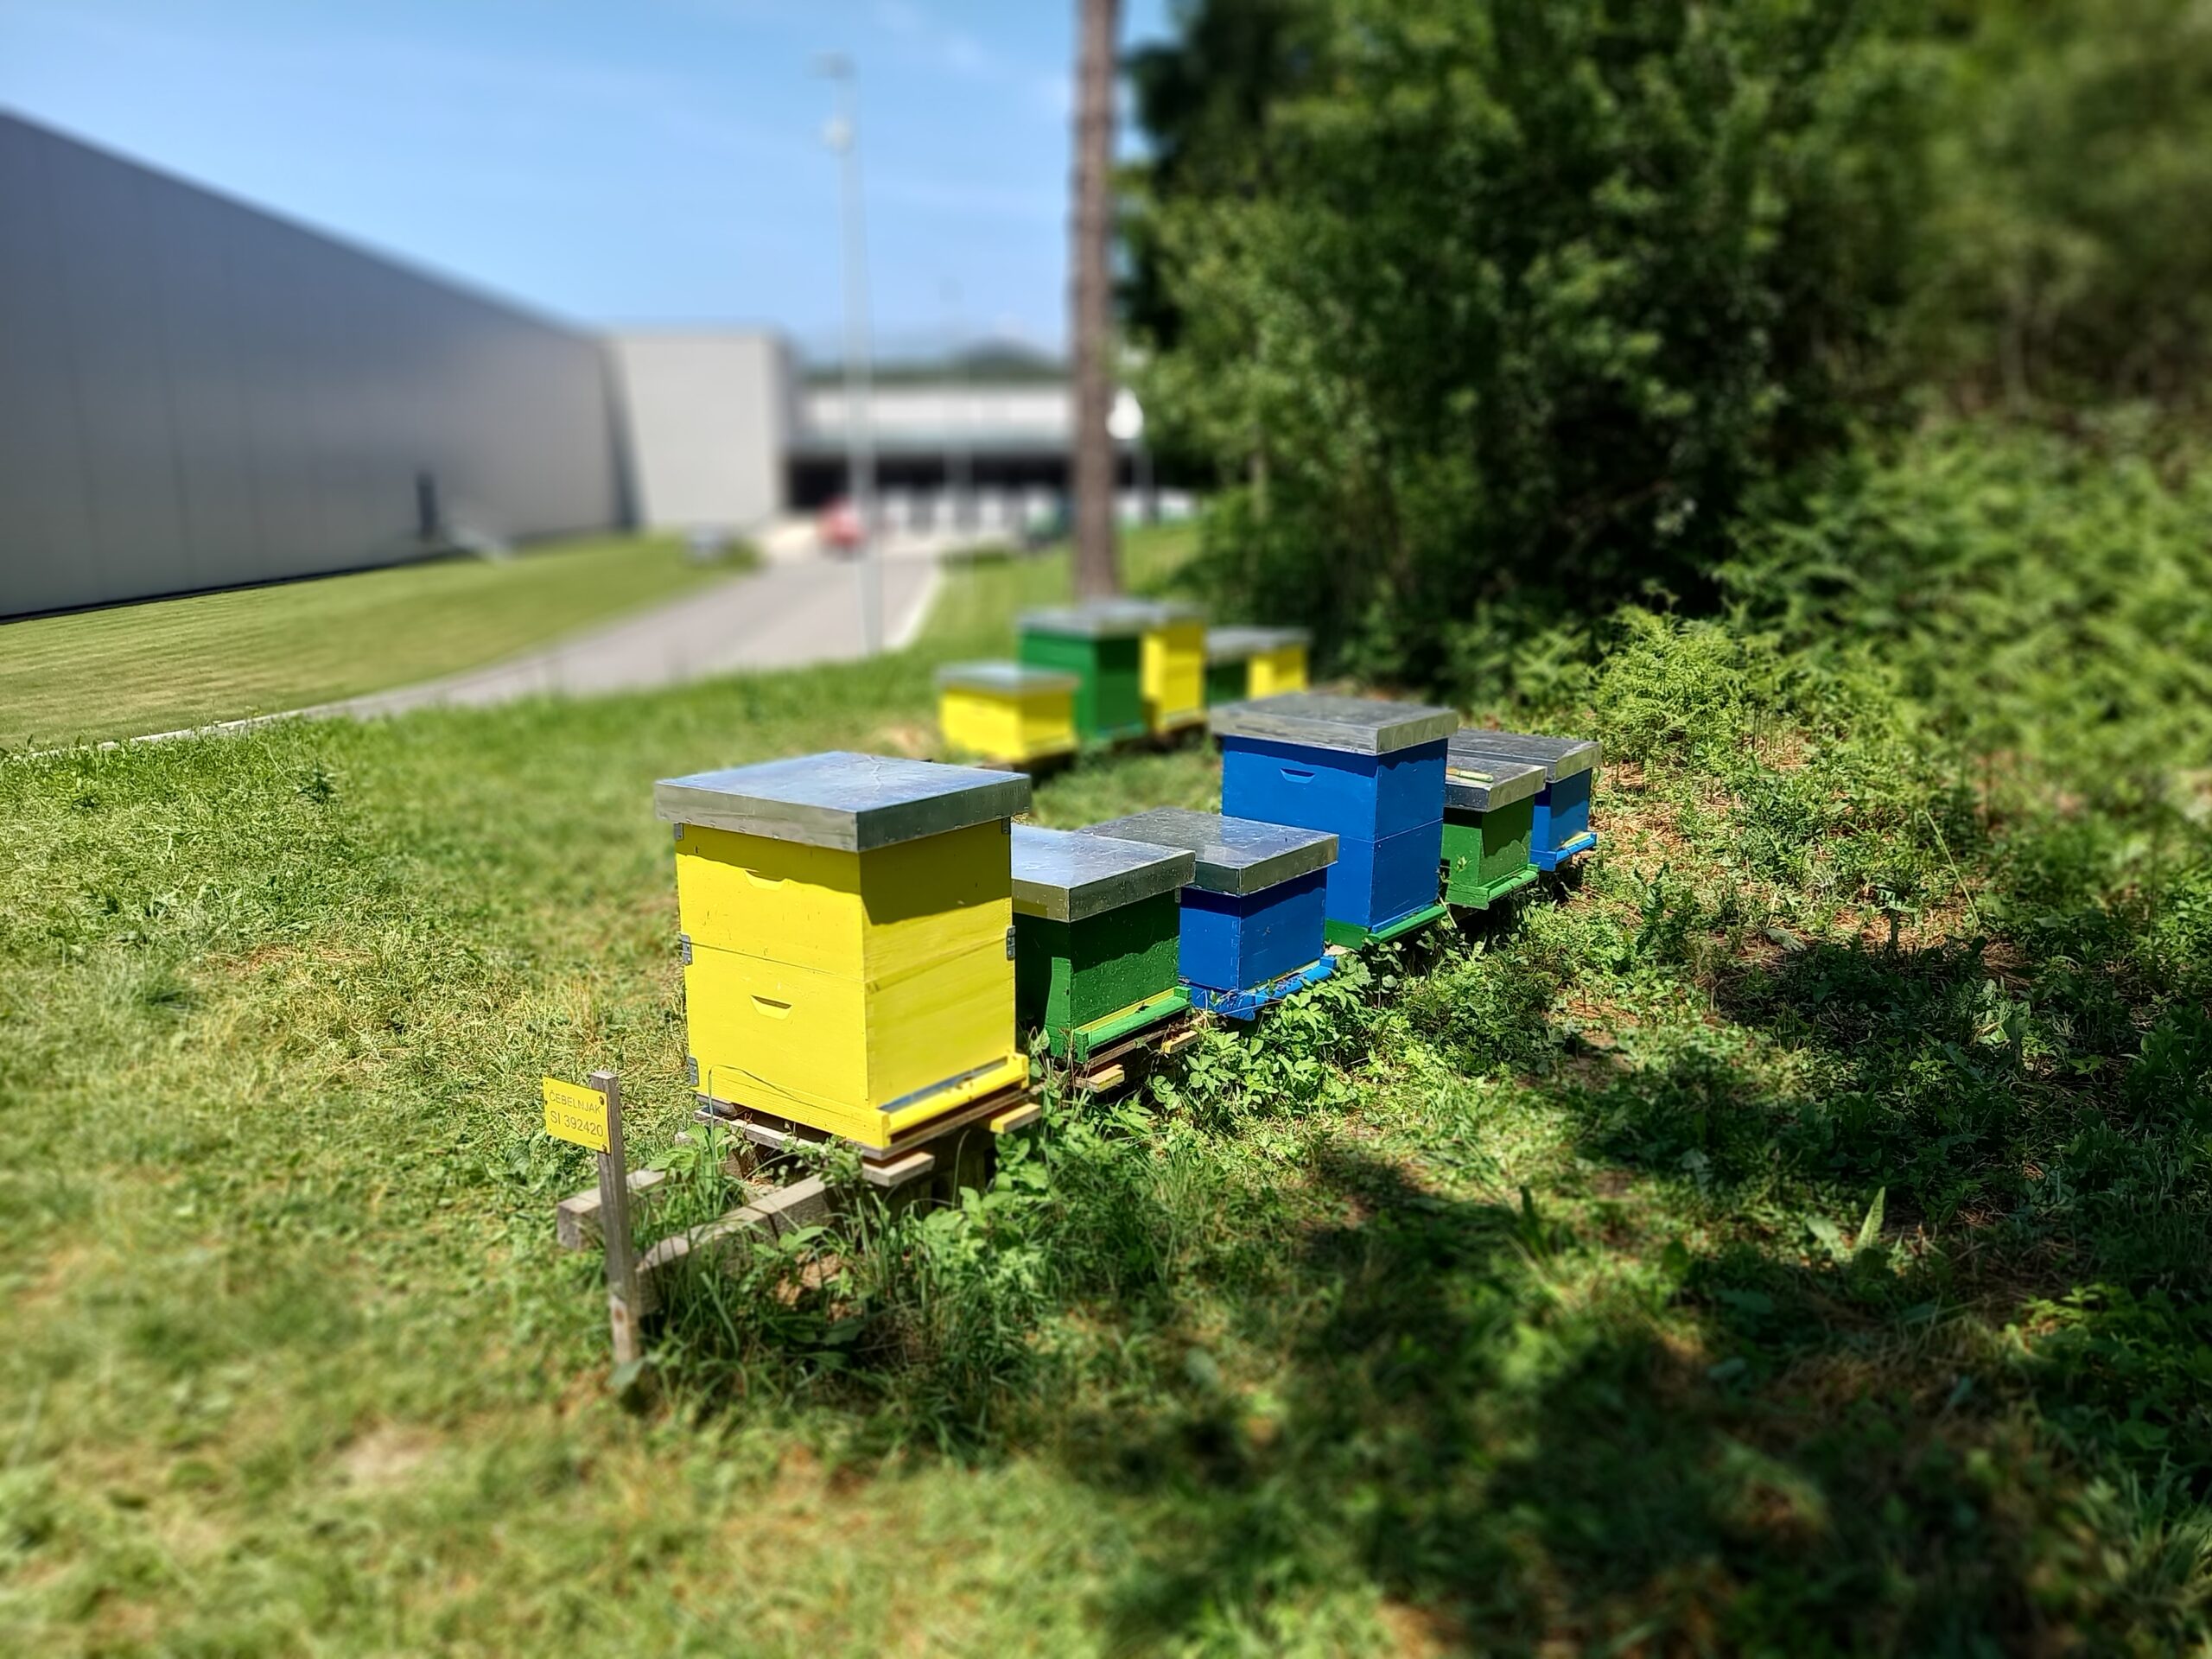 Pregledovanje čebeljih družin v primernih vremenskih pogojih